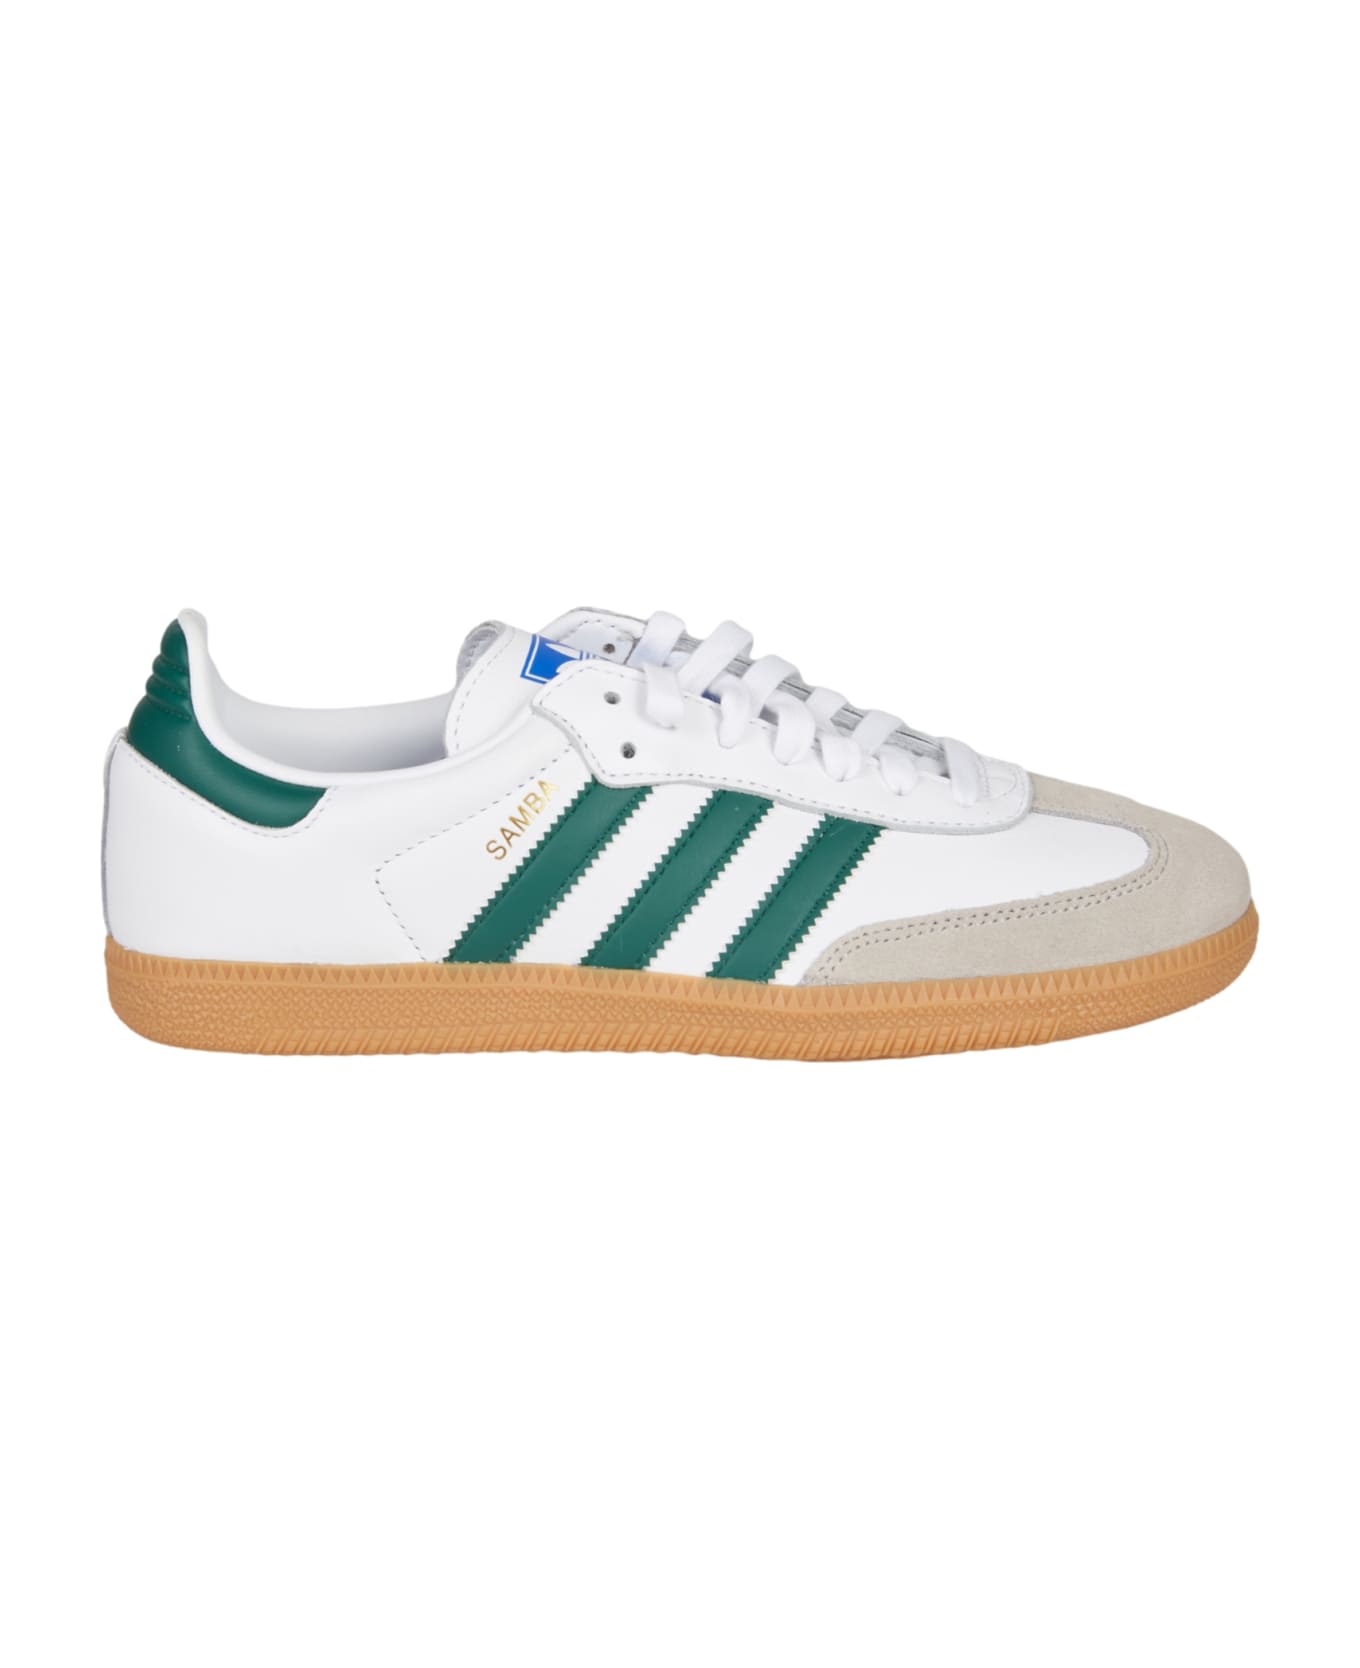 Adidas Samba Og Sneakers - White/Green